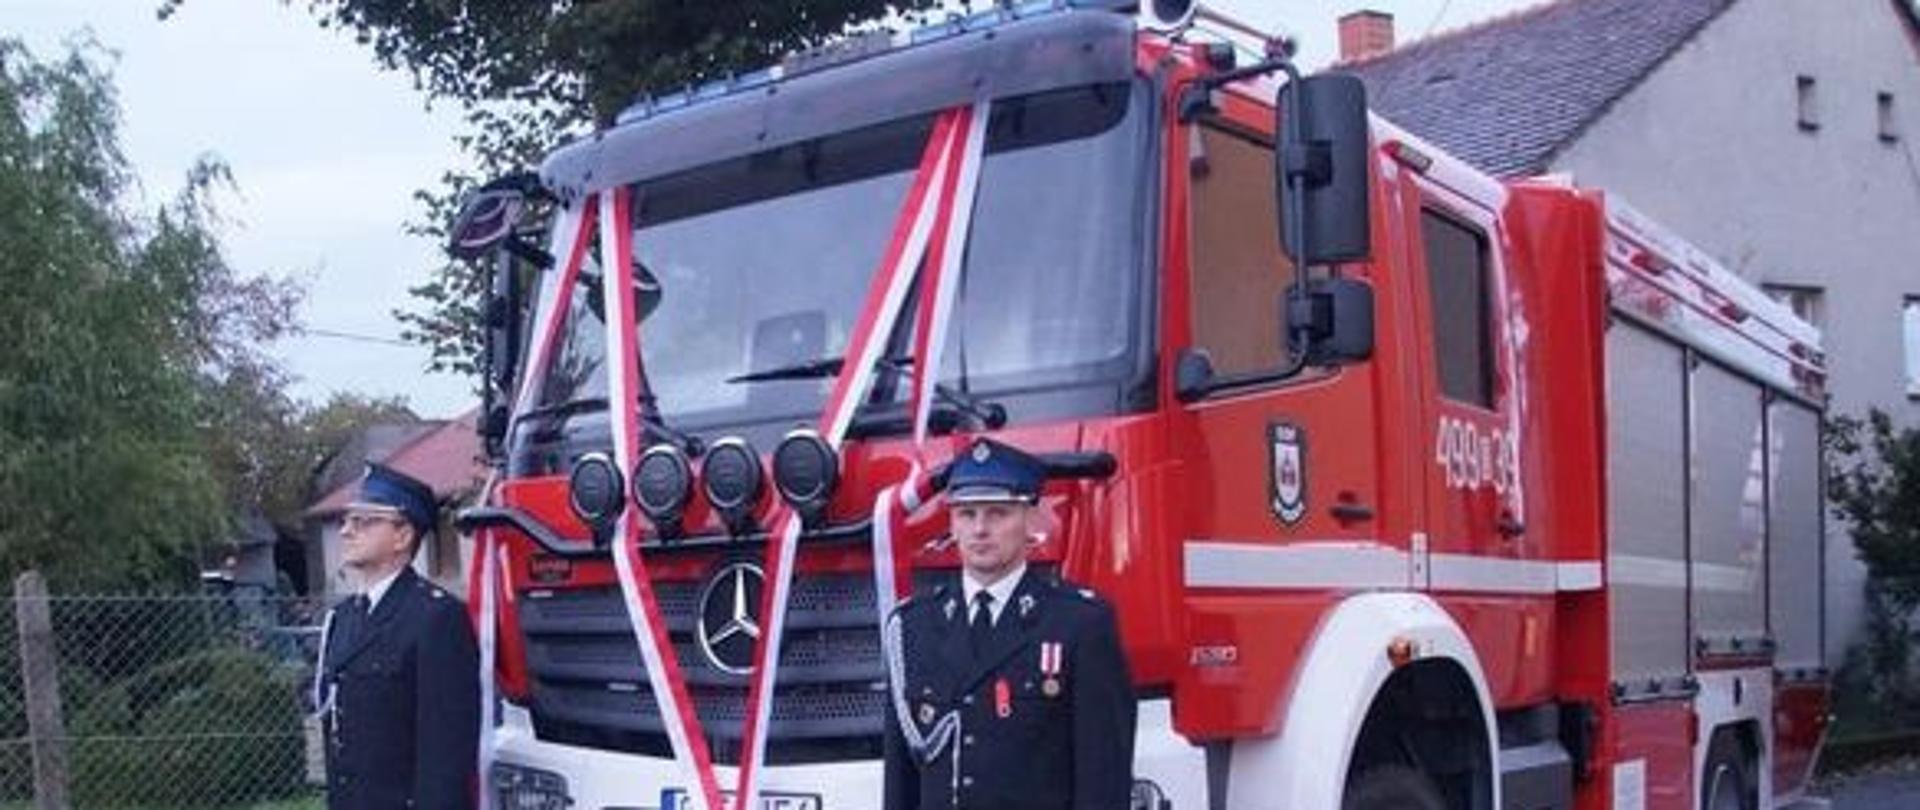 Na zdjęciu znajduje się samochód pożarniczy przystrojony w szarfy w barwach narodowych. Obok stoją strażacy ubrani w mundury wyjściowe